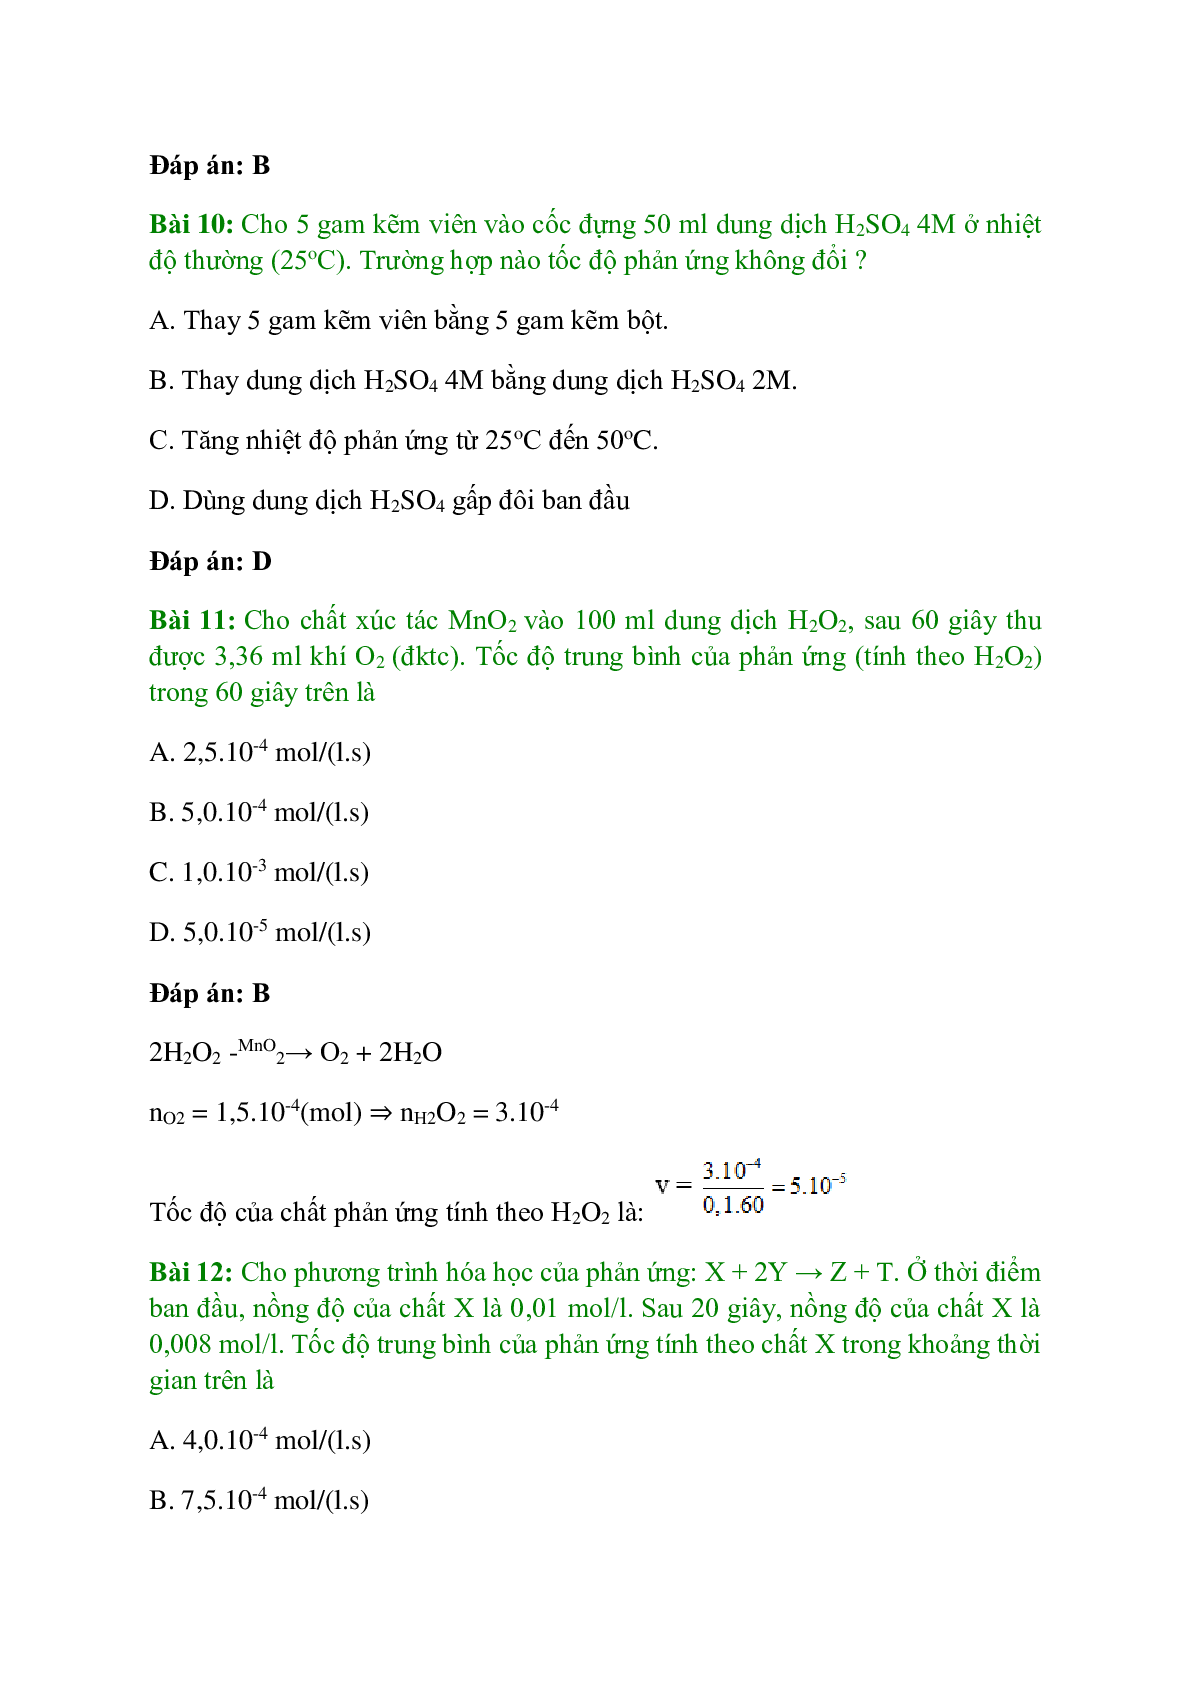 Trắc nghiệm Tốc độ phản ứng hóa học có đáp án - Hóa học 10 (trang 4)